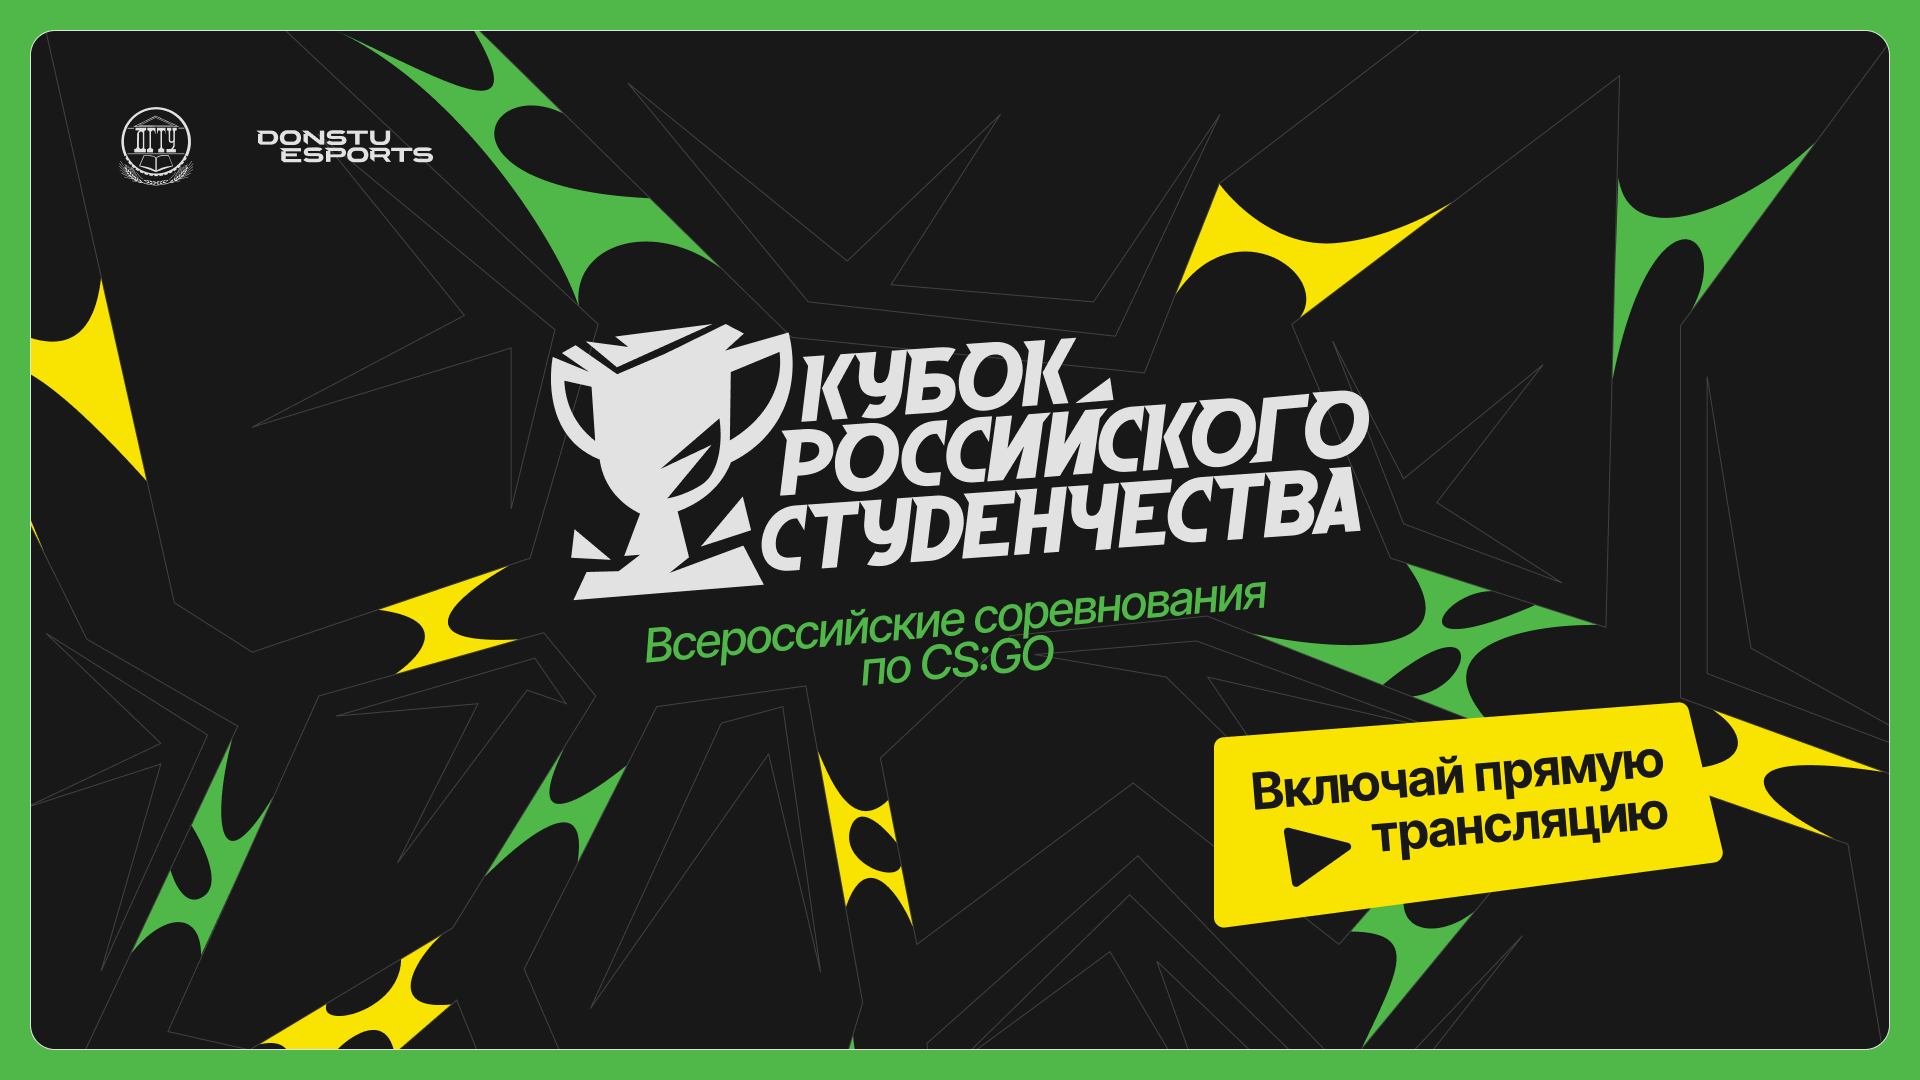 Кубок российского студенчества | СФО | Стрим 1 | Donstu Esports